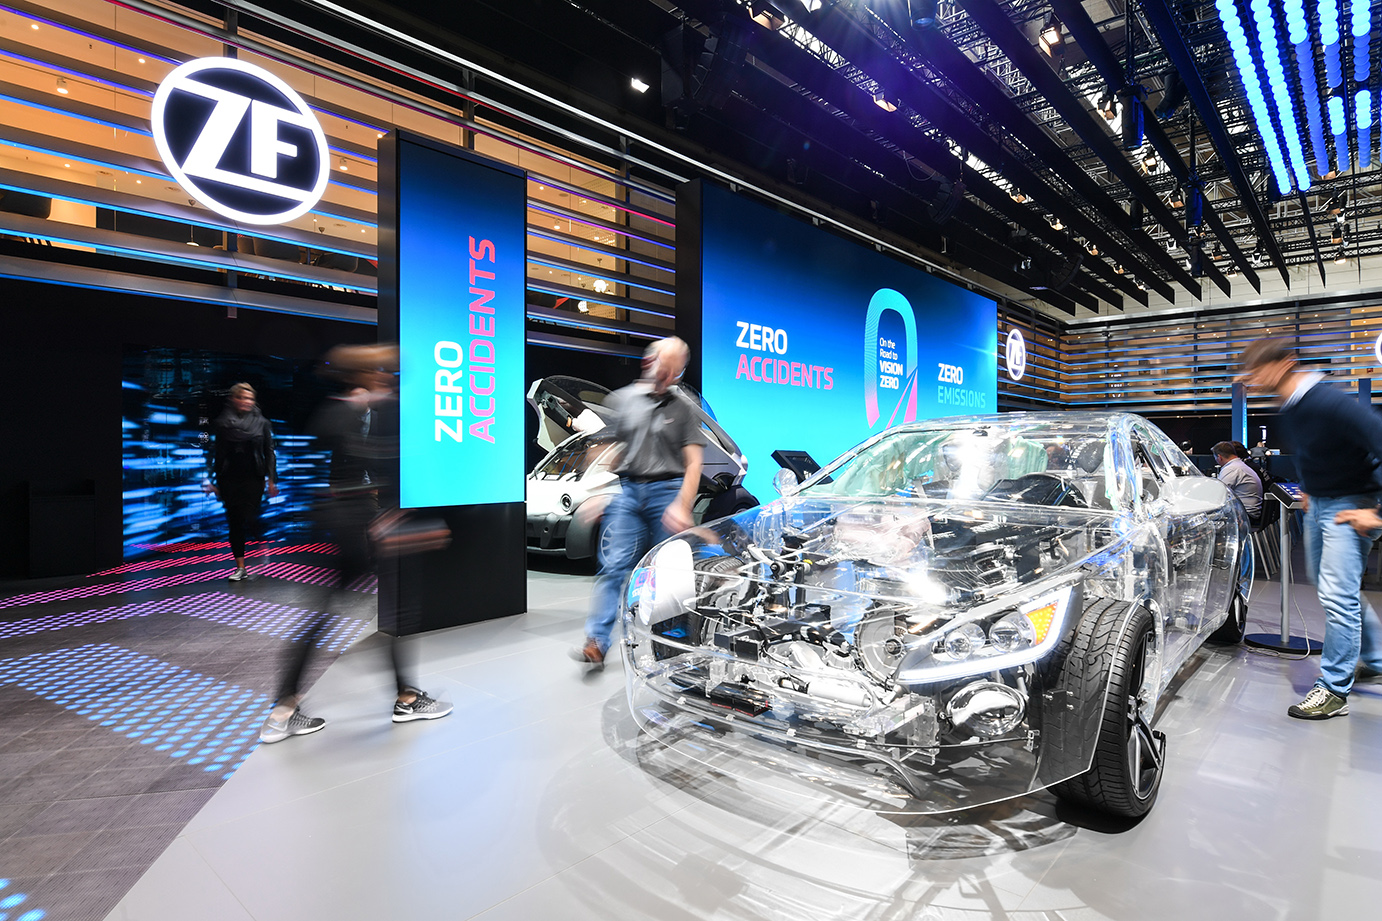 На пути к Vision Zero: безопасность и электромобильность – ключевые темы ZF на IAA в этом году. На стенде представлен новый фирменный стиль.